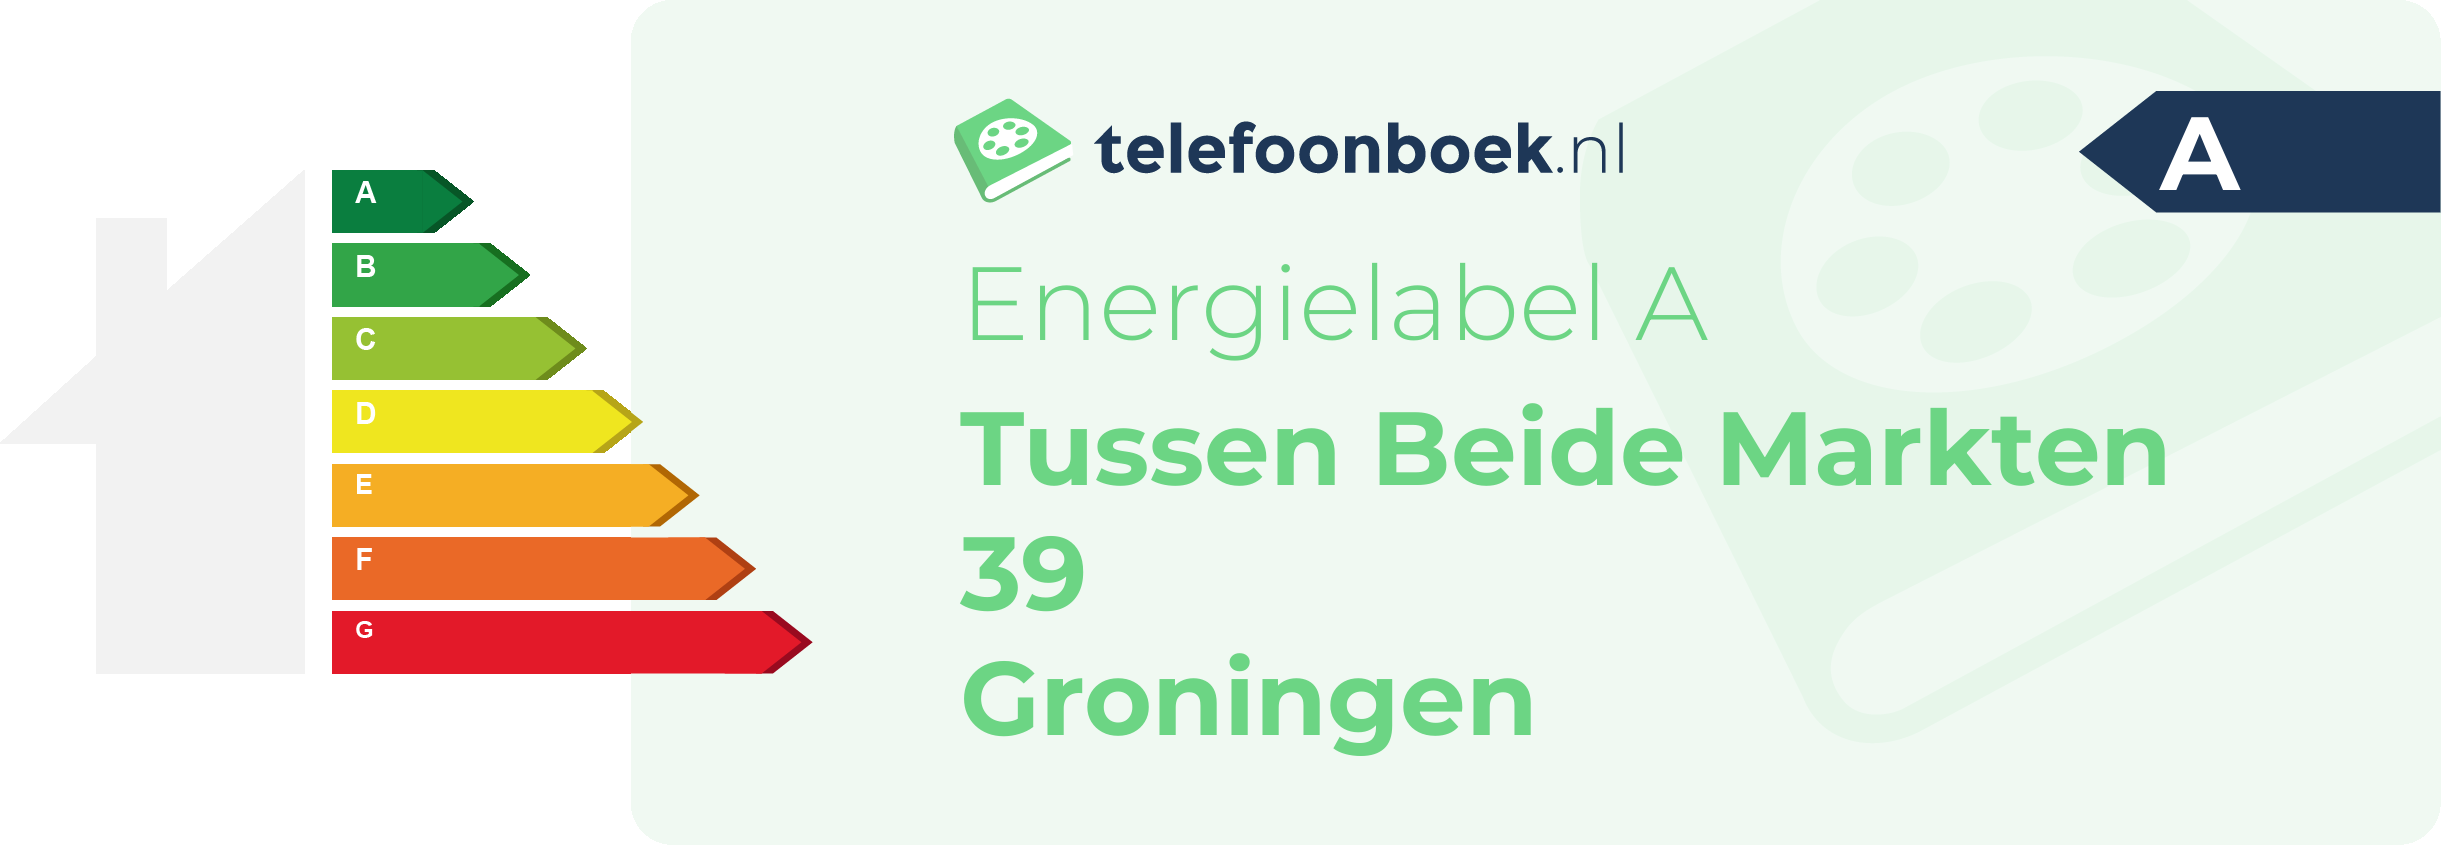 Energielabel Tussen Beide Markten 39 Groningen